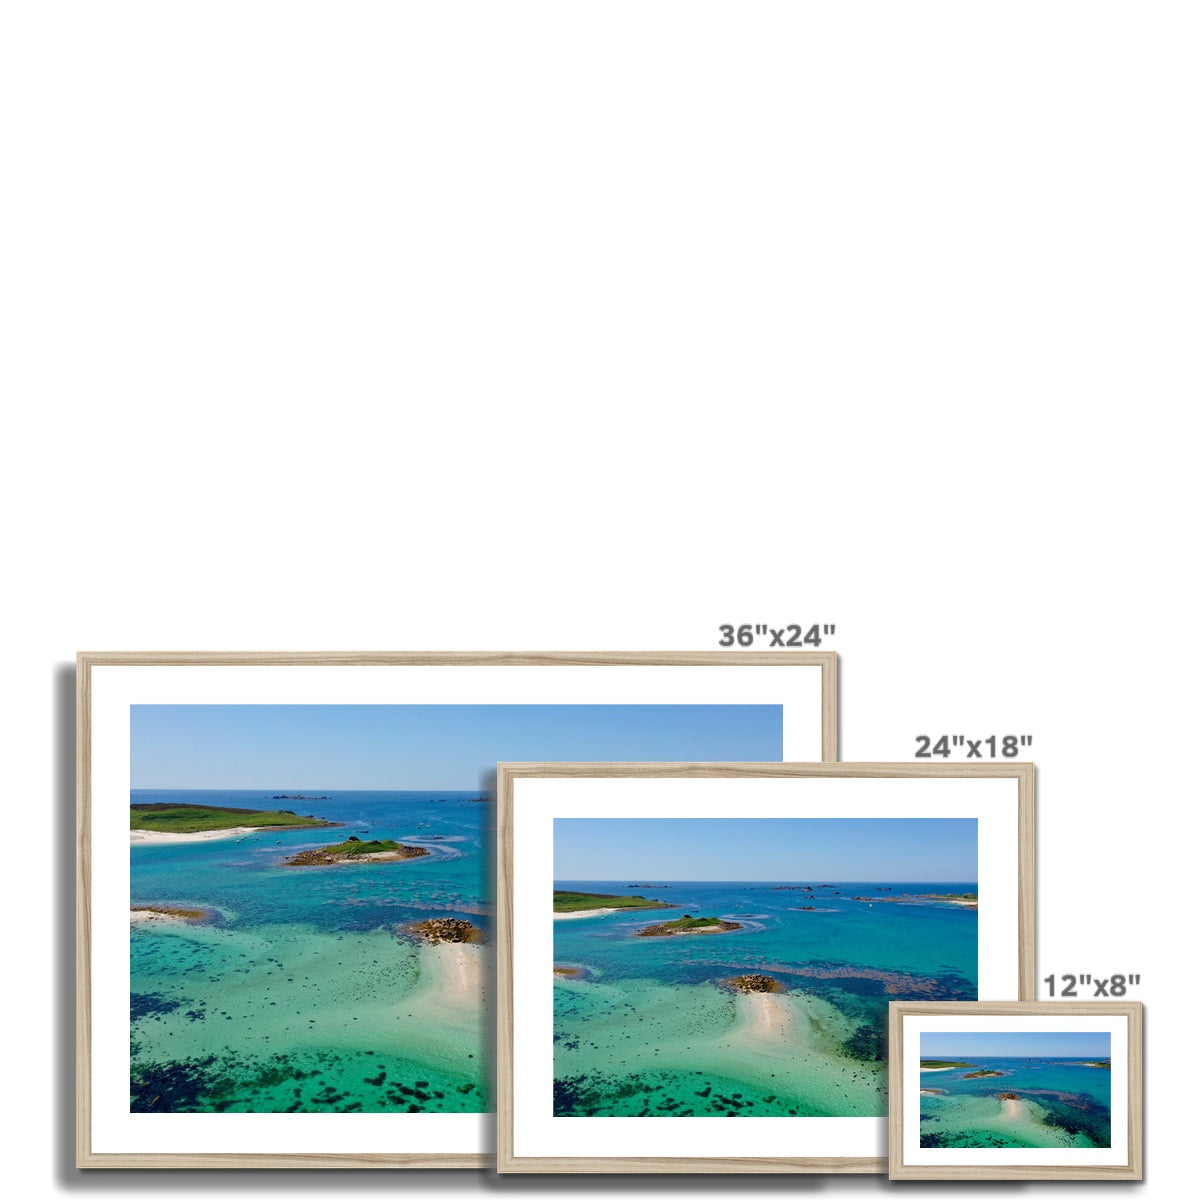 sampson view frame sizes